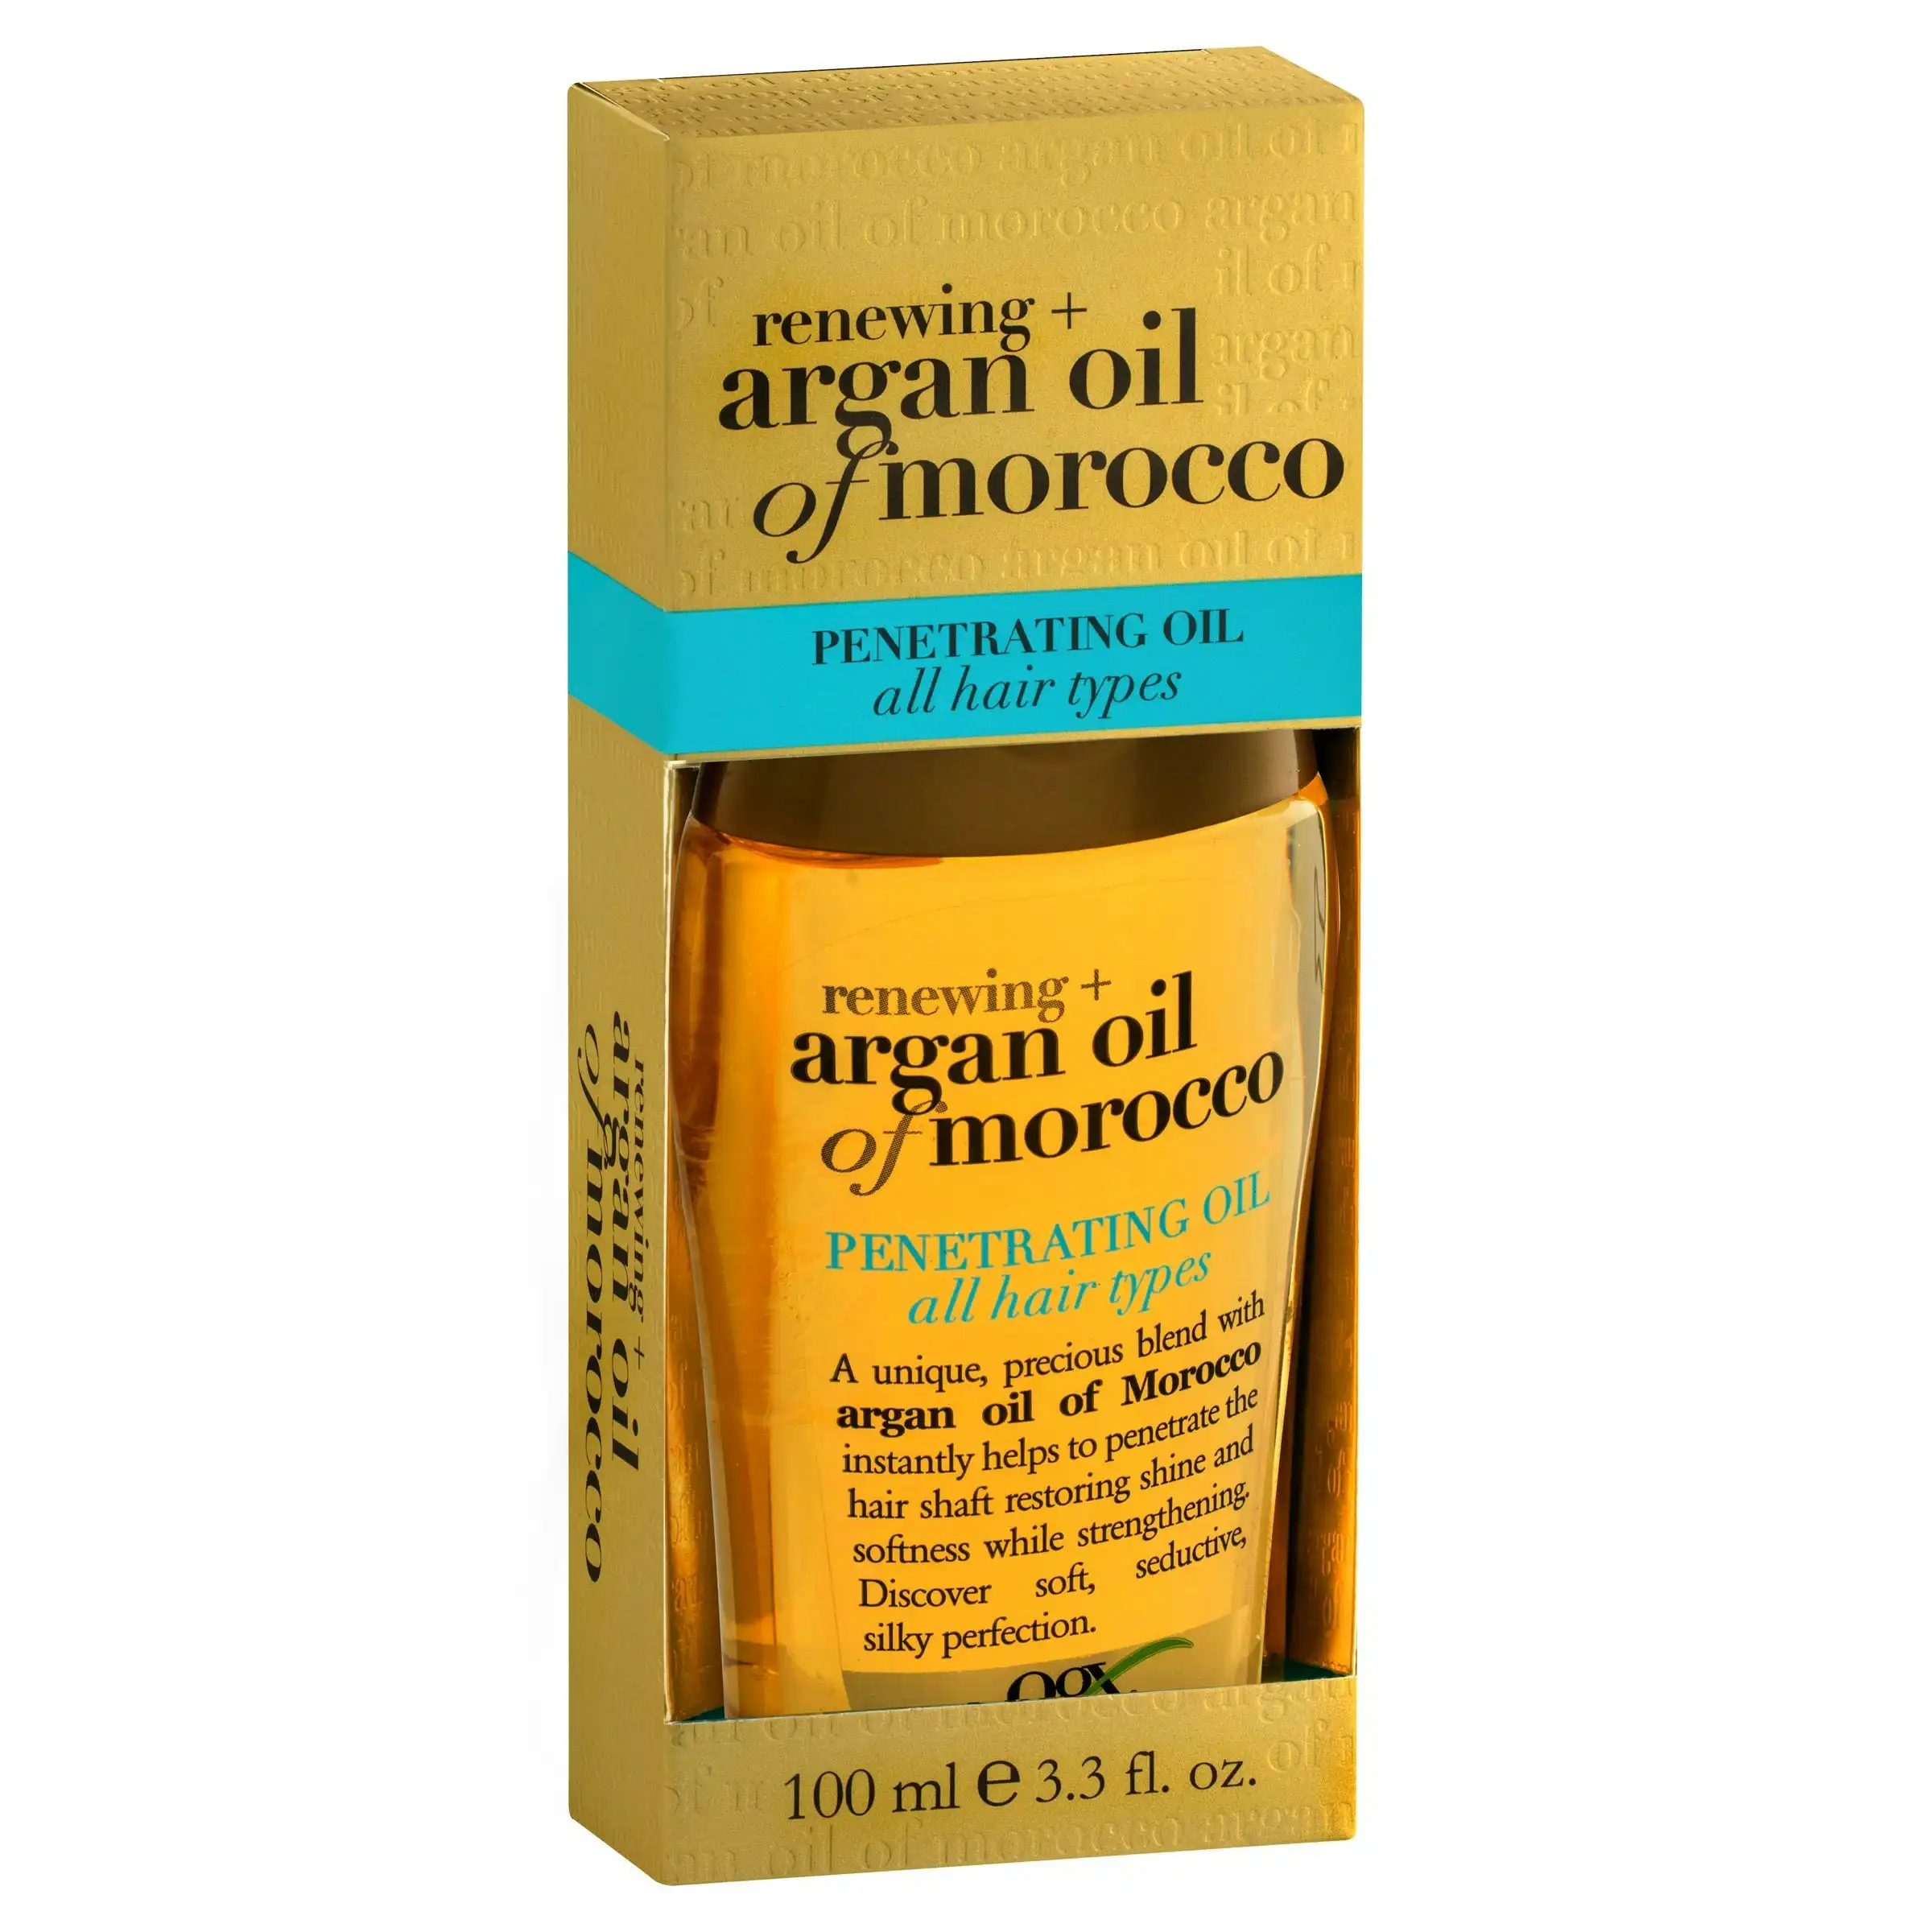 OGX Argan Oil of Morocco Penetrating Oil 100mL